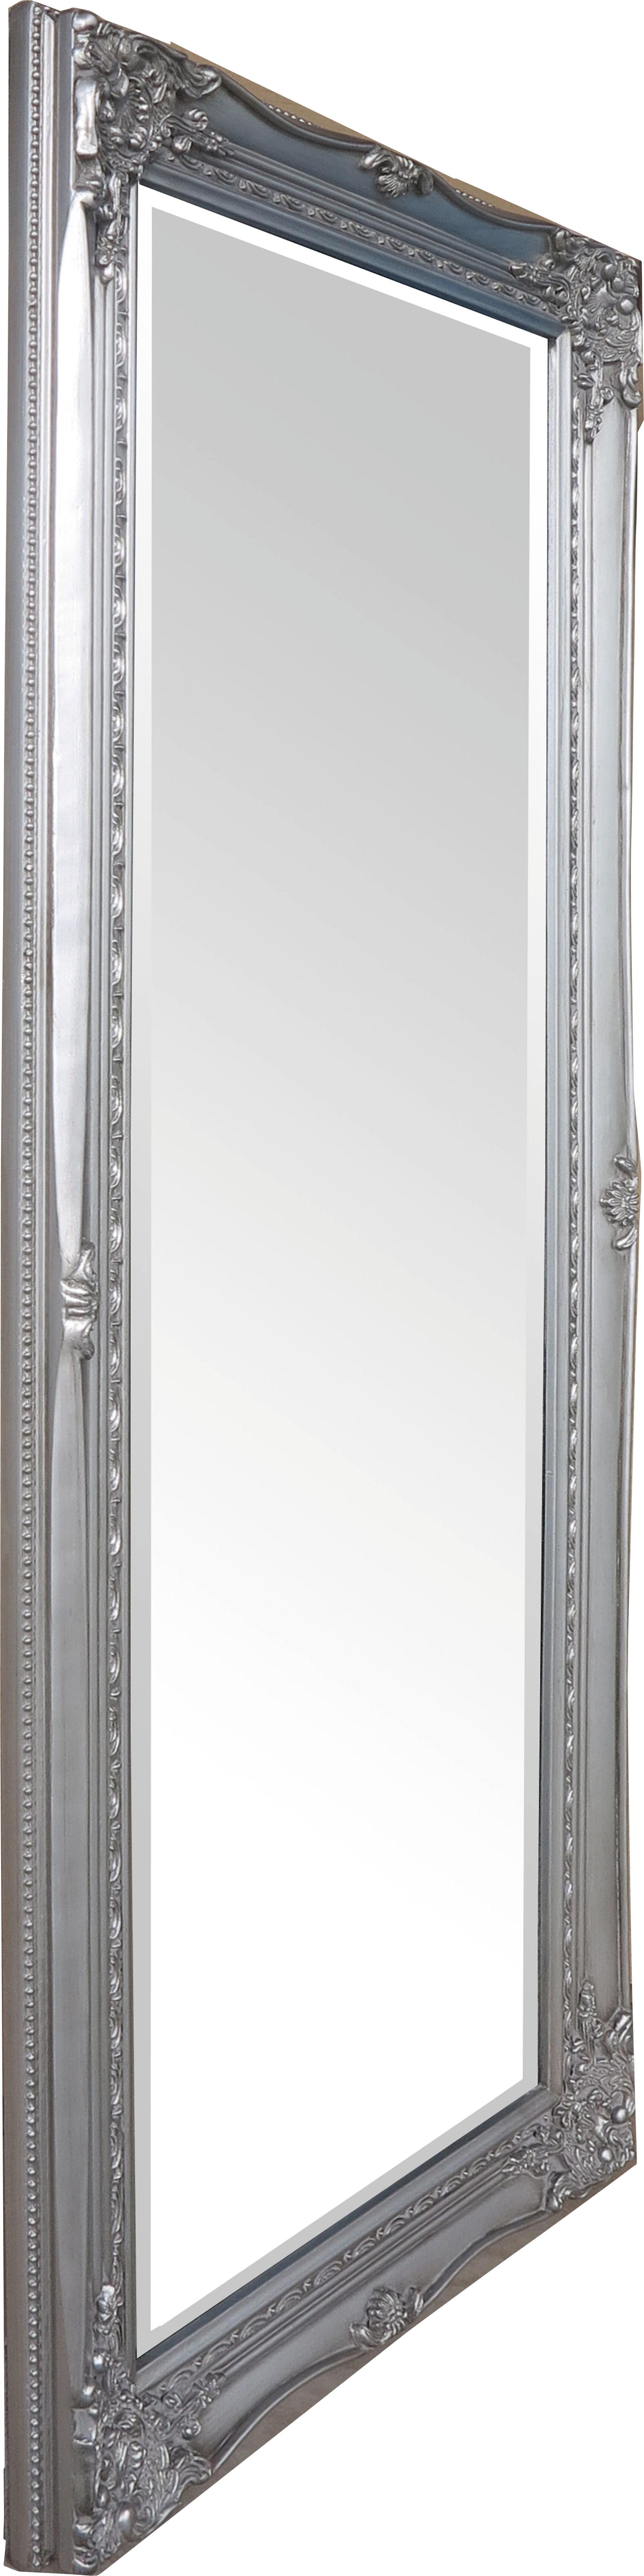 Nástěnné Zrcadlo Antje - barvy stříbra, Moderní, kompozitní dřevo/sklo (52/122/5cm)